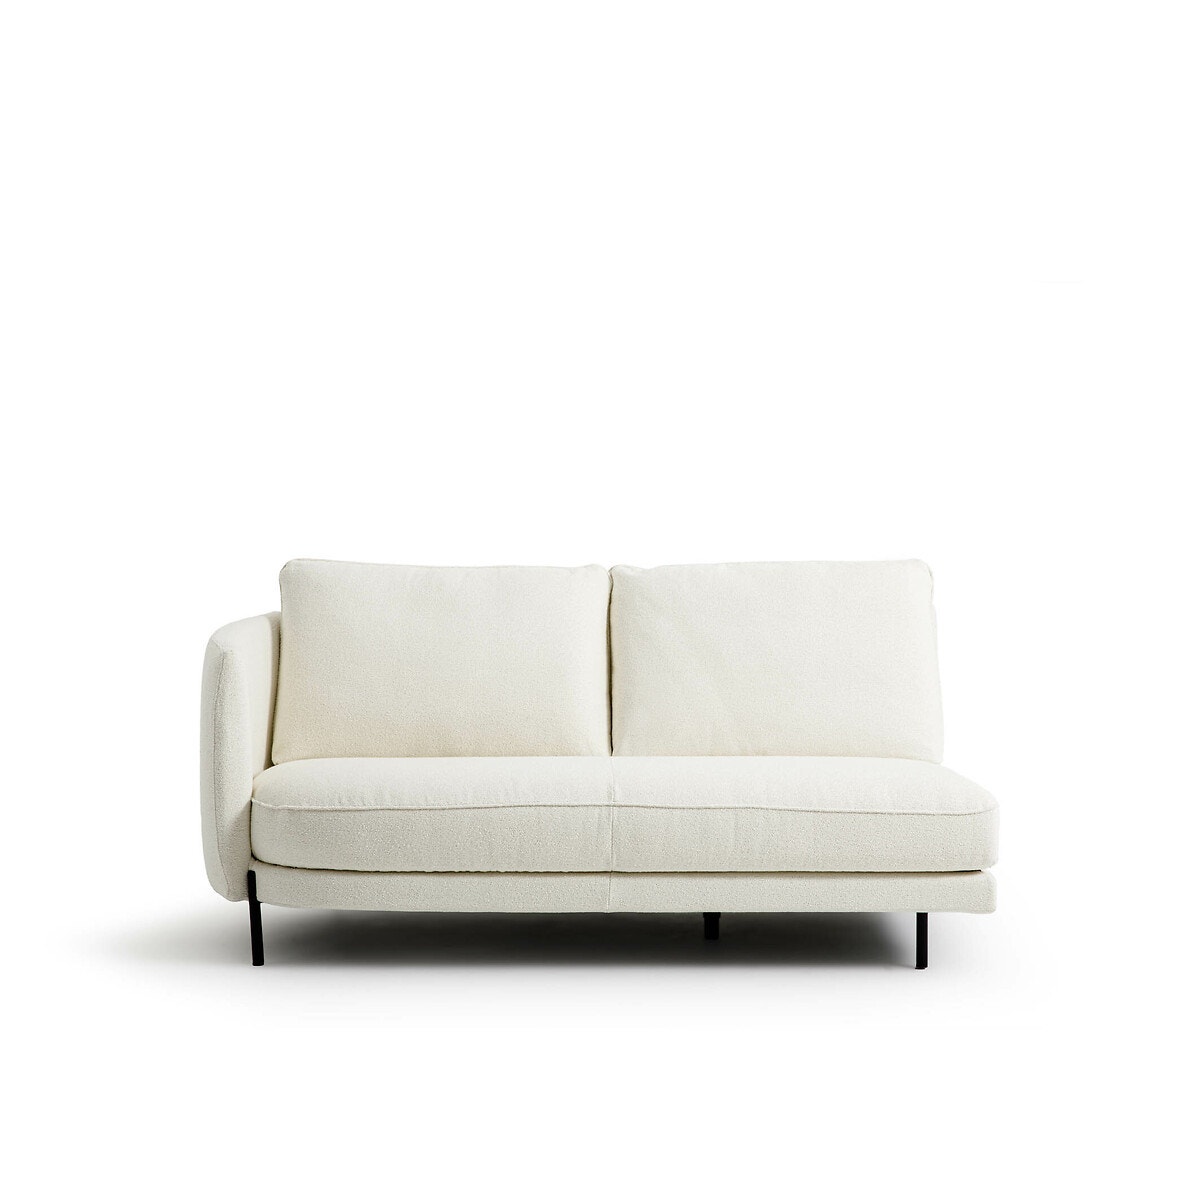 Μισός καναπές με μπουκλέ ταπετσαρία Arcus, σχεδίασης E. Gallina